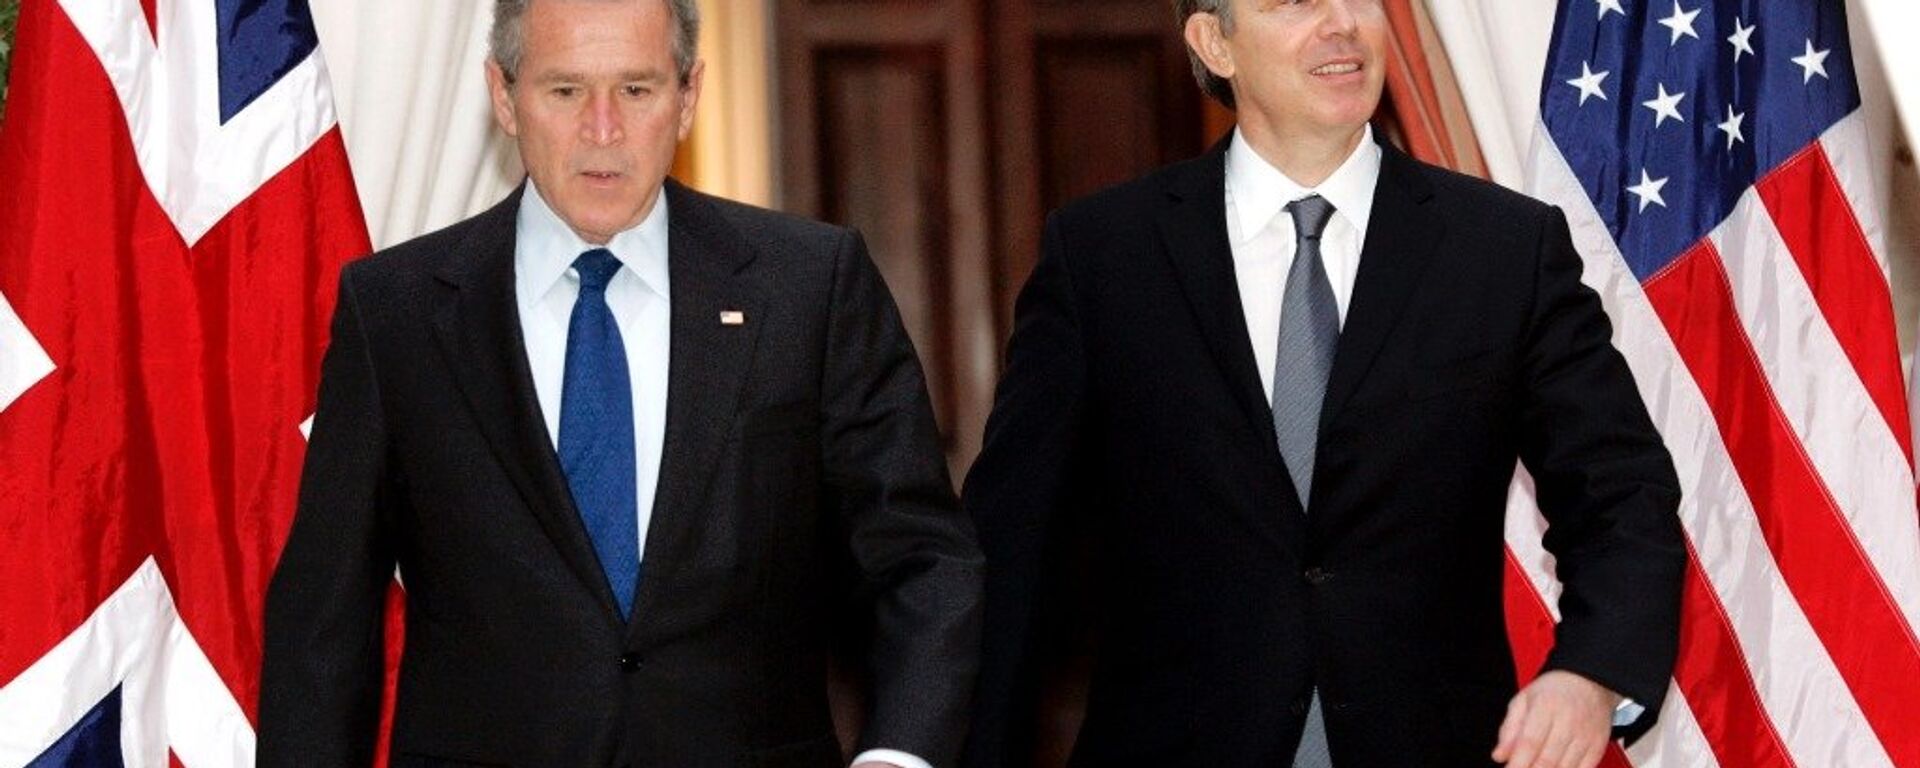 George Bush ve Tony Blair - Sputnik Türkiye, 1920, 06.07.2016